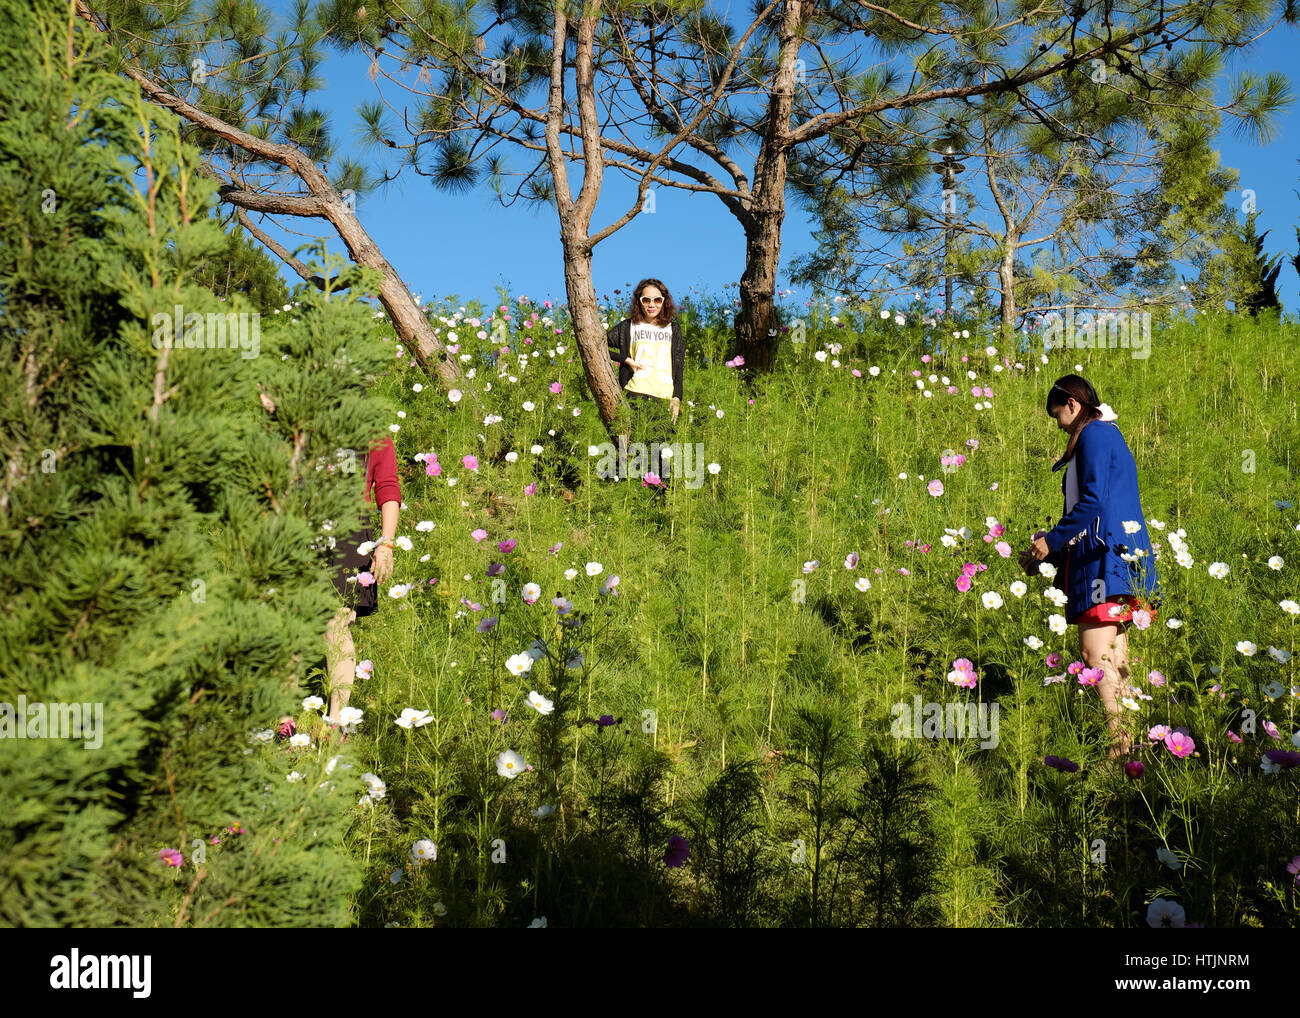 DA LAT, VIET NAM - JAN 1: Voll Szene in Dalat Blumenpark am Blumenfest im Frühling, Gruppe von Reisenden besuchen Naturgarten auf Urlaub, reine atmos Stockfoto